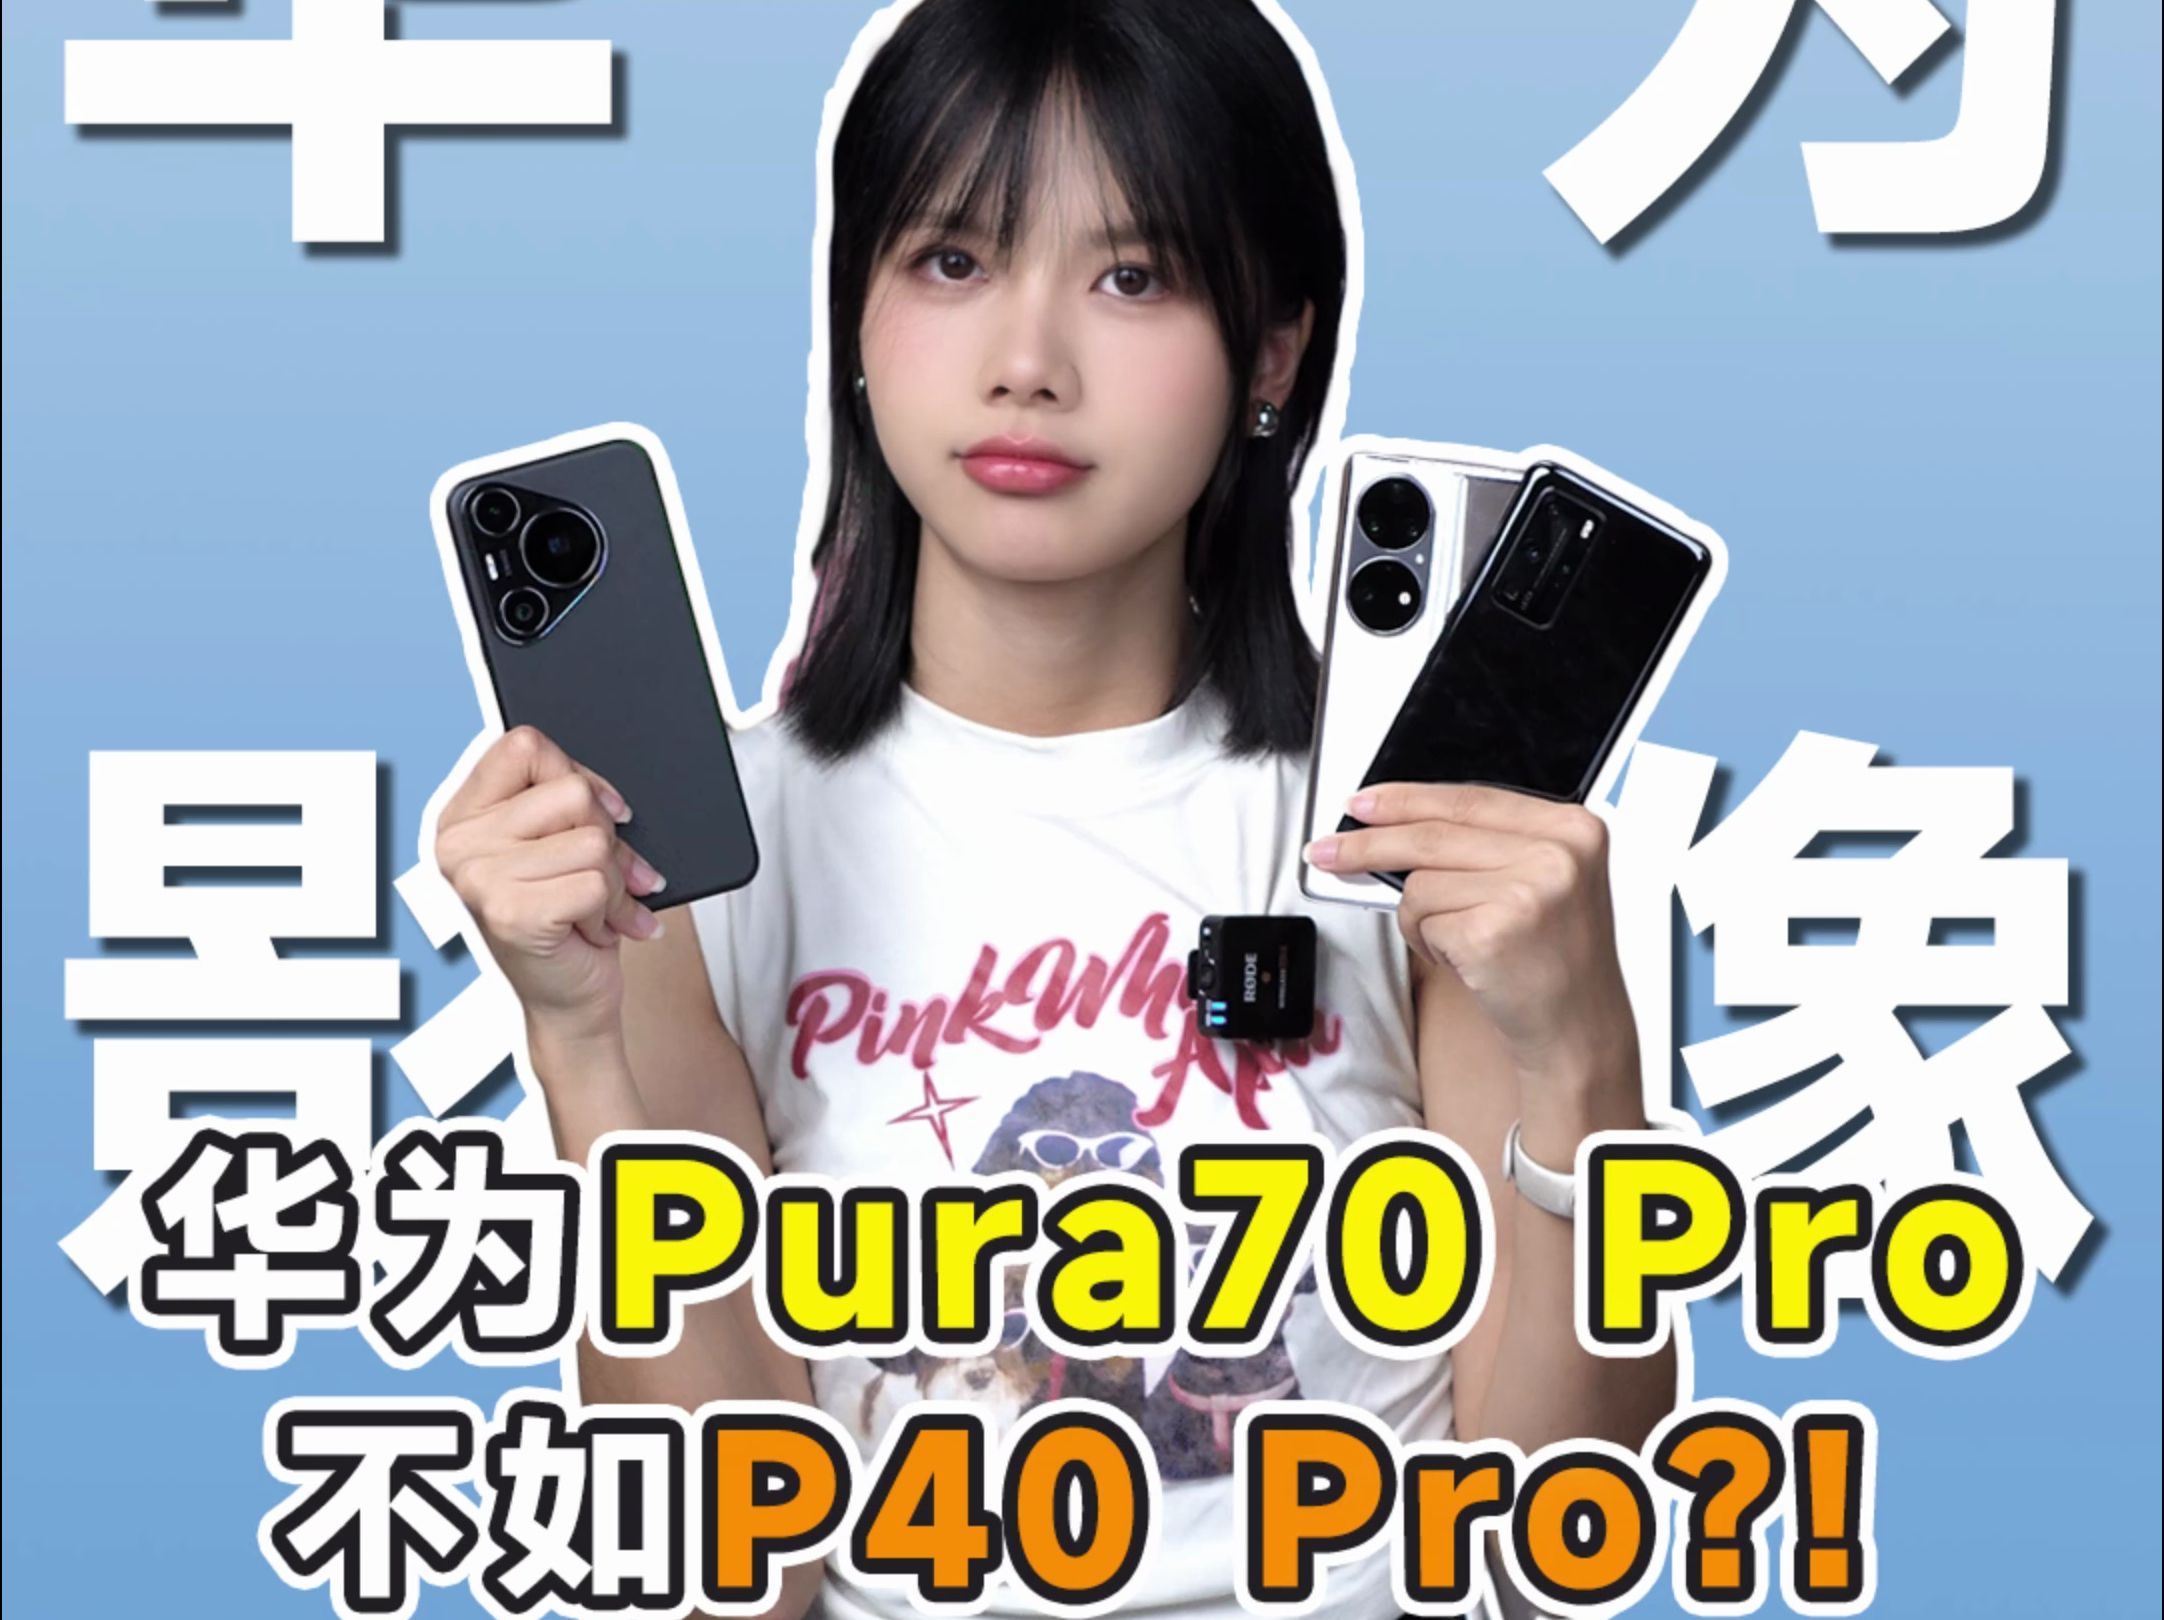 华为Pura70 Pro被3年前的老华为干翻了？！